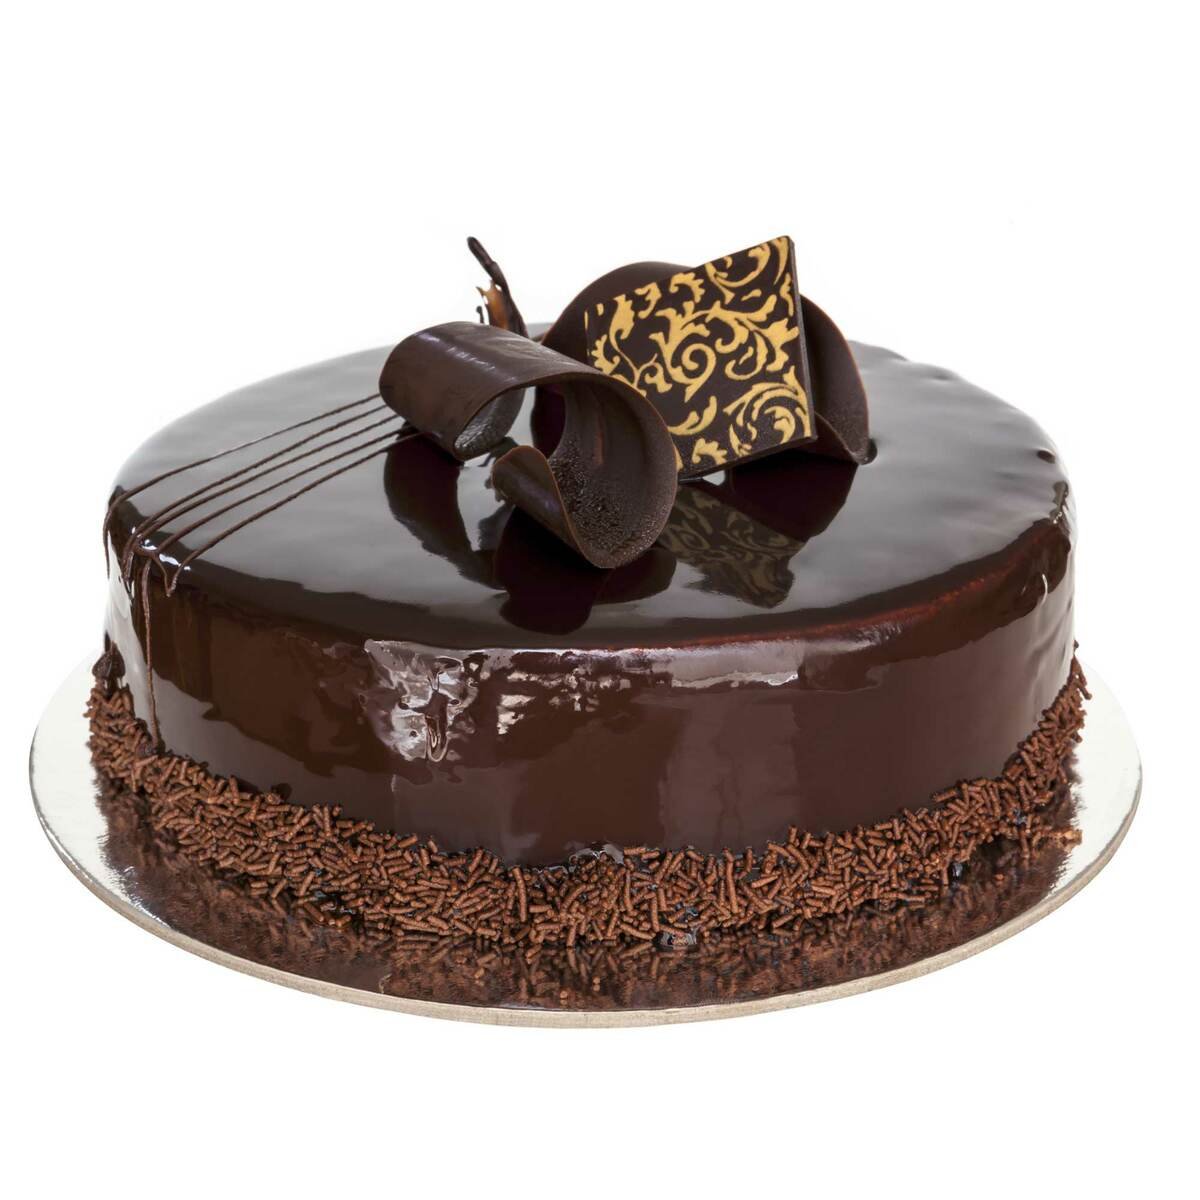 LuLu Bakery Chocolate Cake Large 1 pc